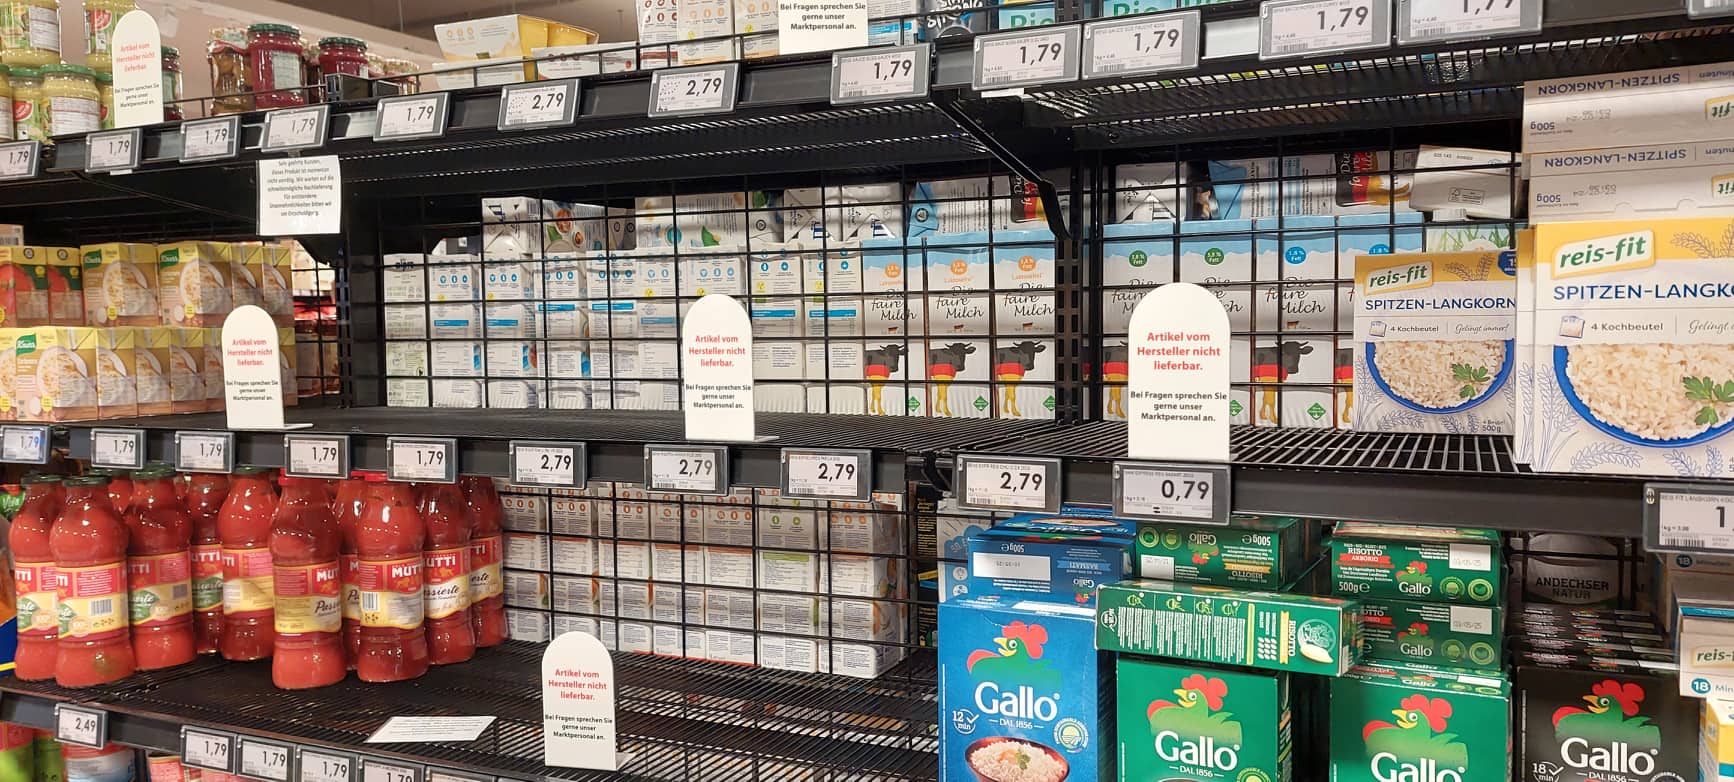 „Artikel vom Hersteller nicht lieferbar“: US-Konzern legt sich mit zwei deutschen Supermarktgrößen an